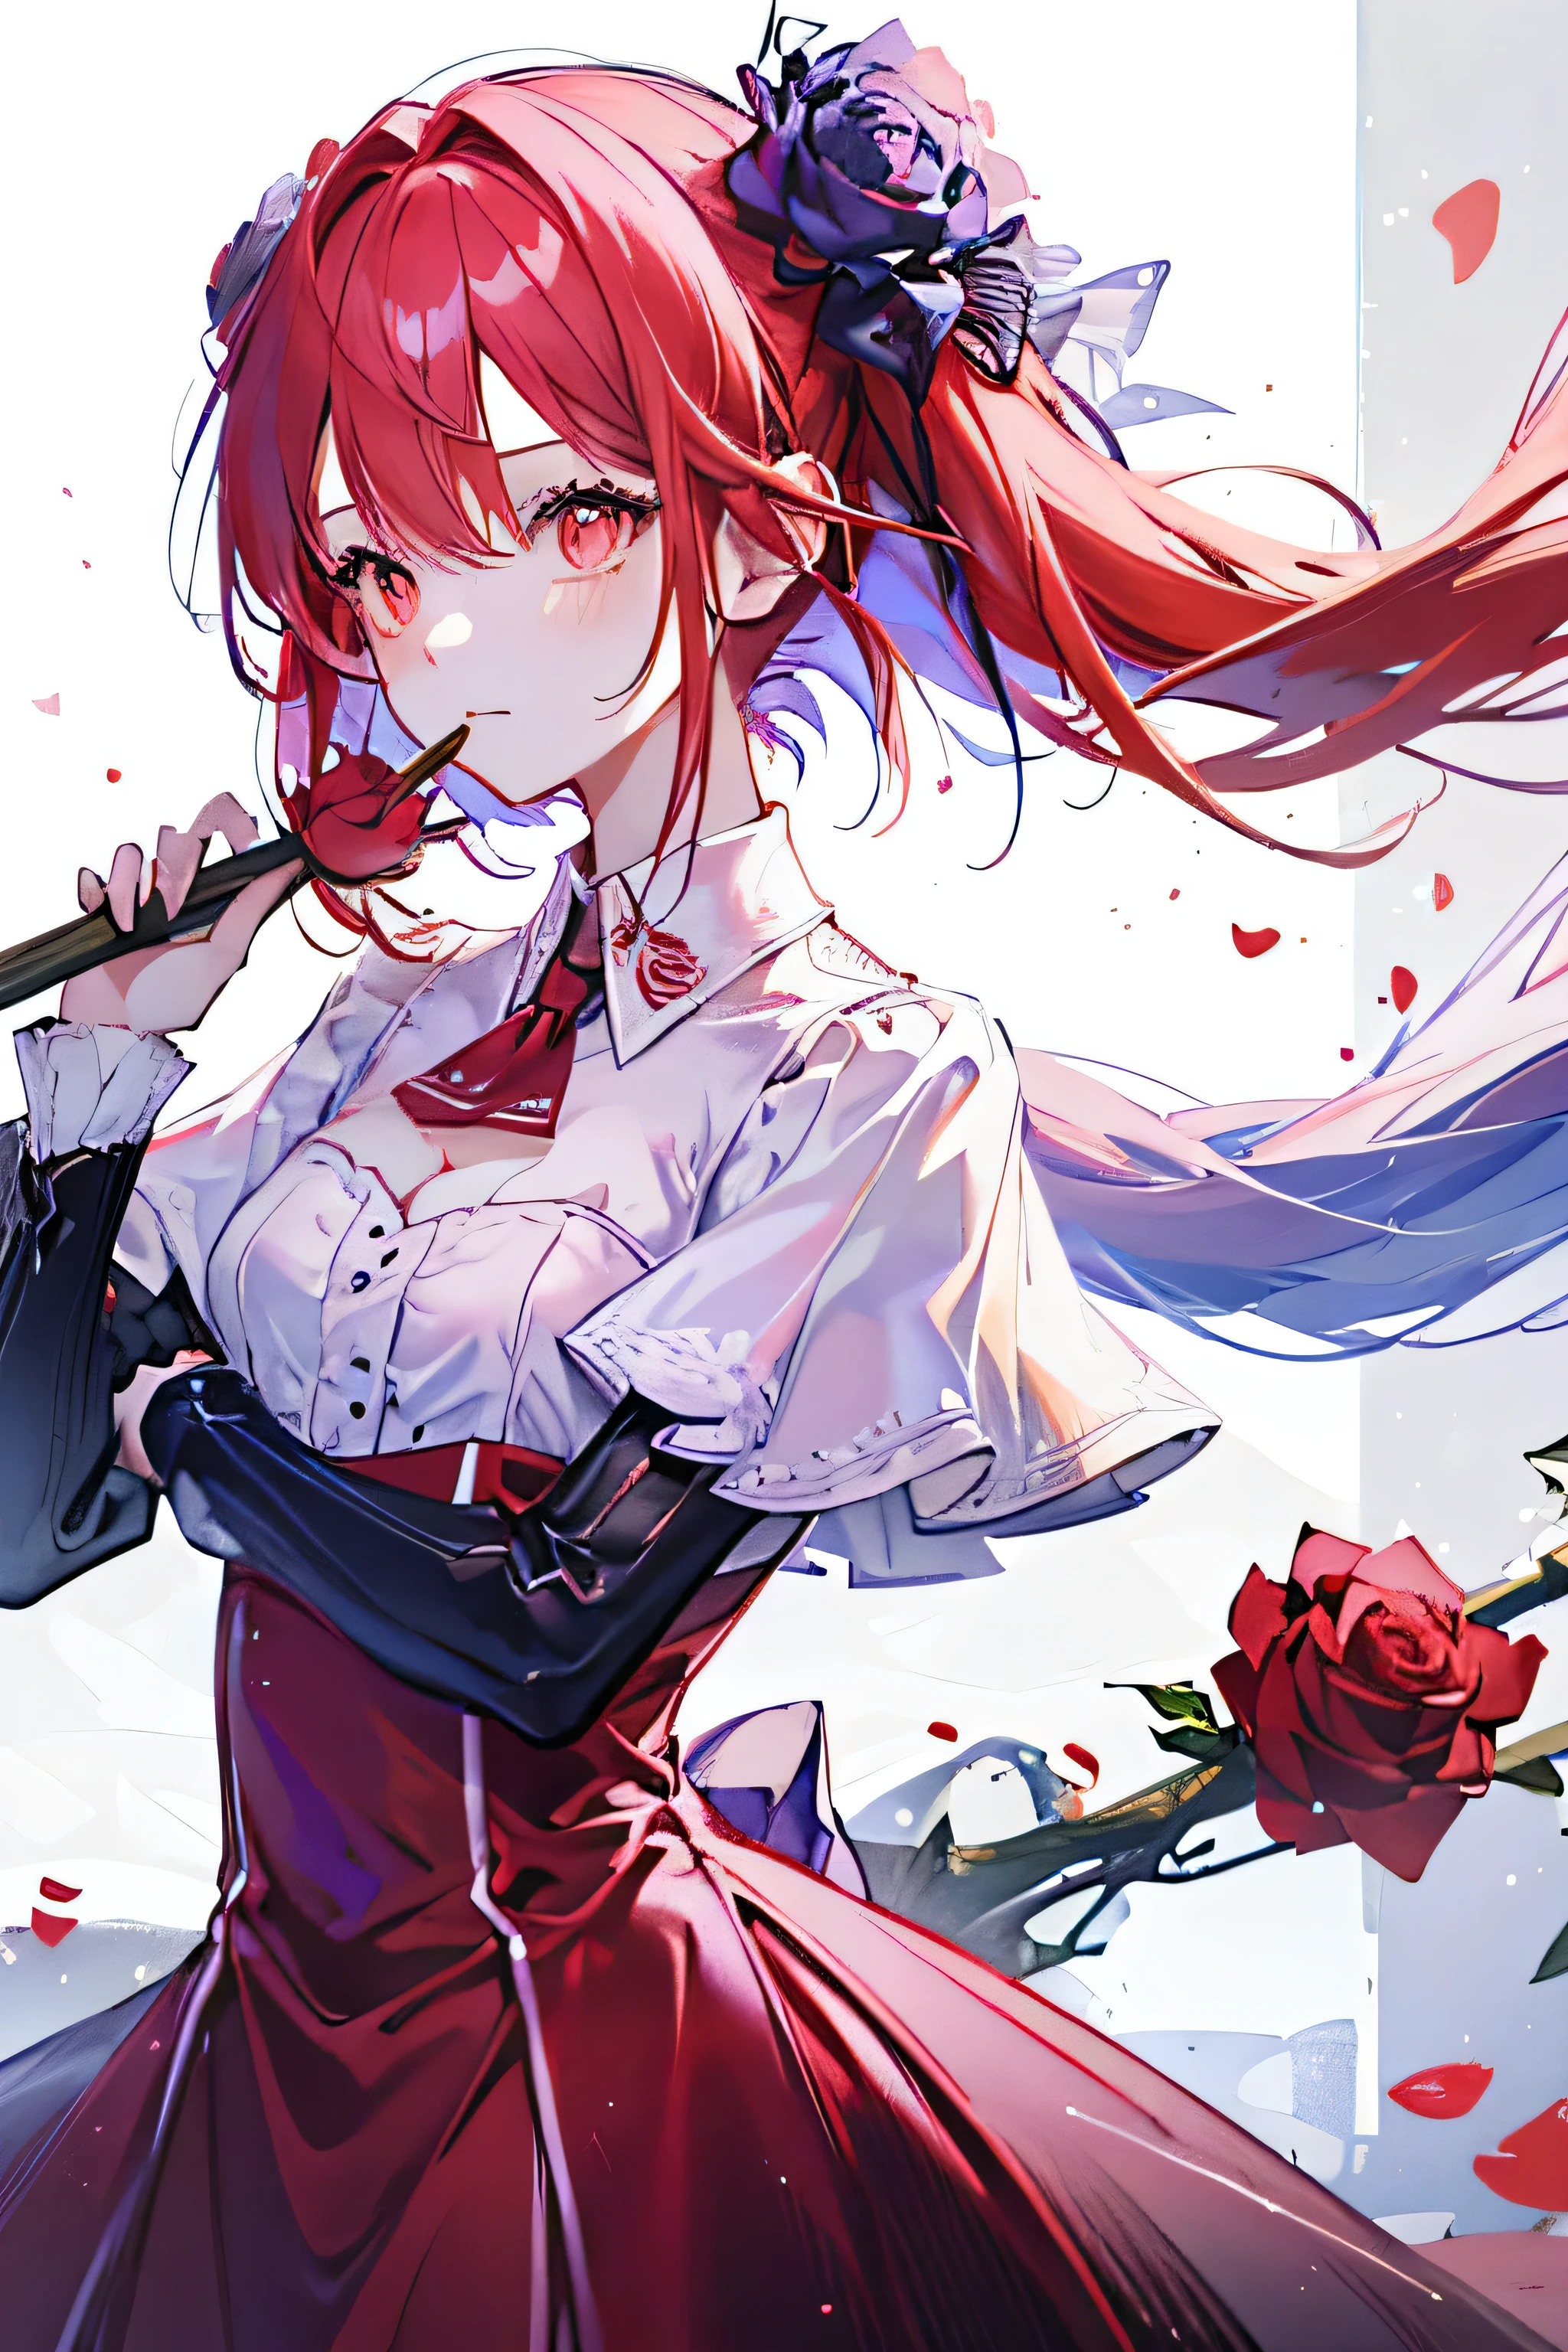 (höchste Qualität, Meisterwerk), (1 Mädchen, allein, rotes Kleid, Stehen , Rote Haare, rote Augen, Eine Rose halten, geschlossener Mund, Oberkörper), (lila Rose Blume)